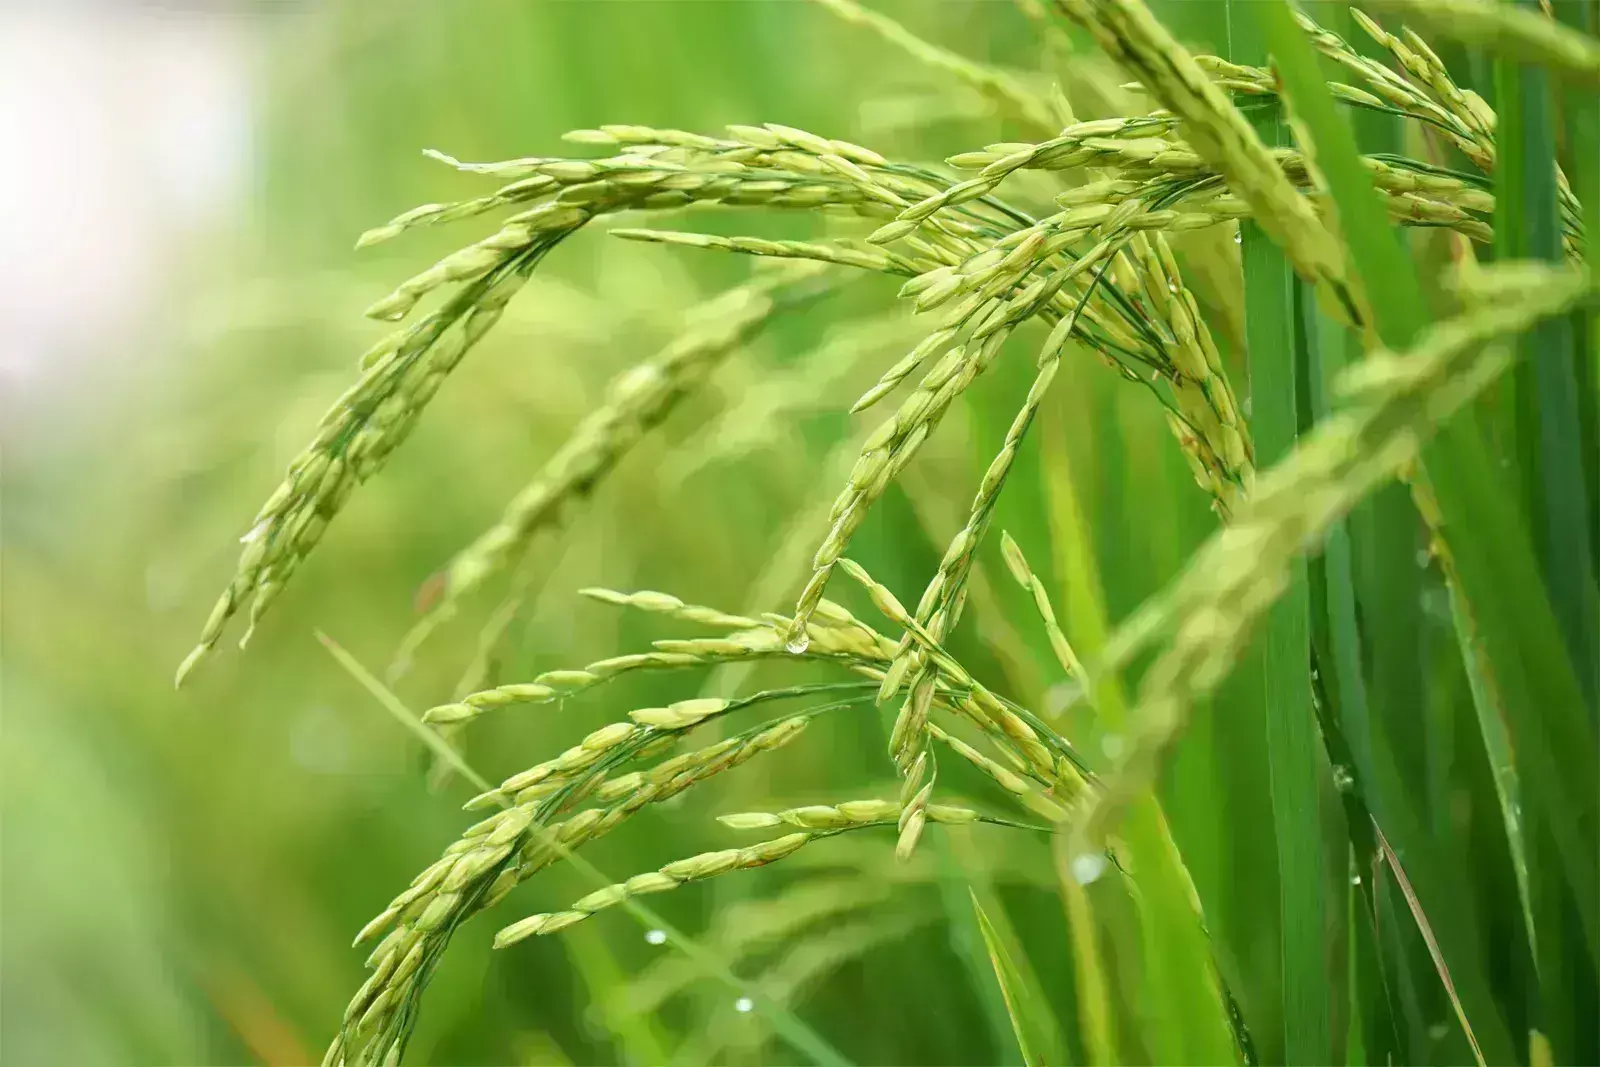 पर्याप्त घरेलू उपलब्धता सुनिश्चित करने के लिए टूटे हुए चावल की निर्यात नीति संशोधित की गई : श्री सुधांशु पांडेय